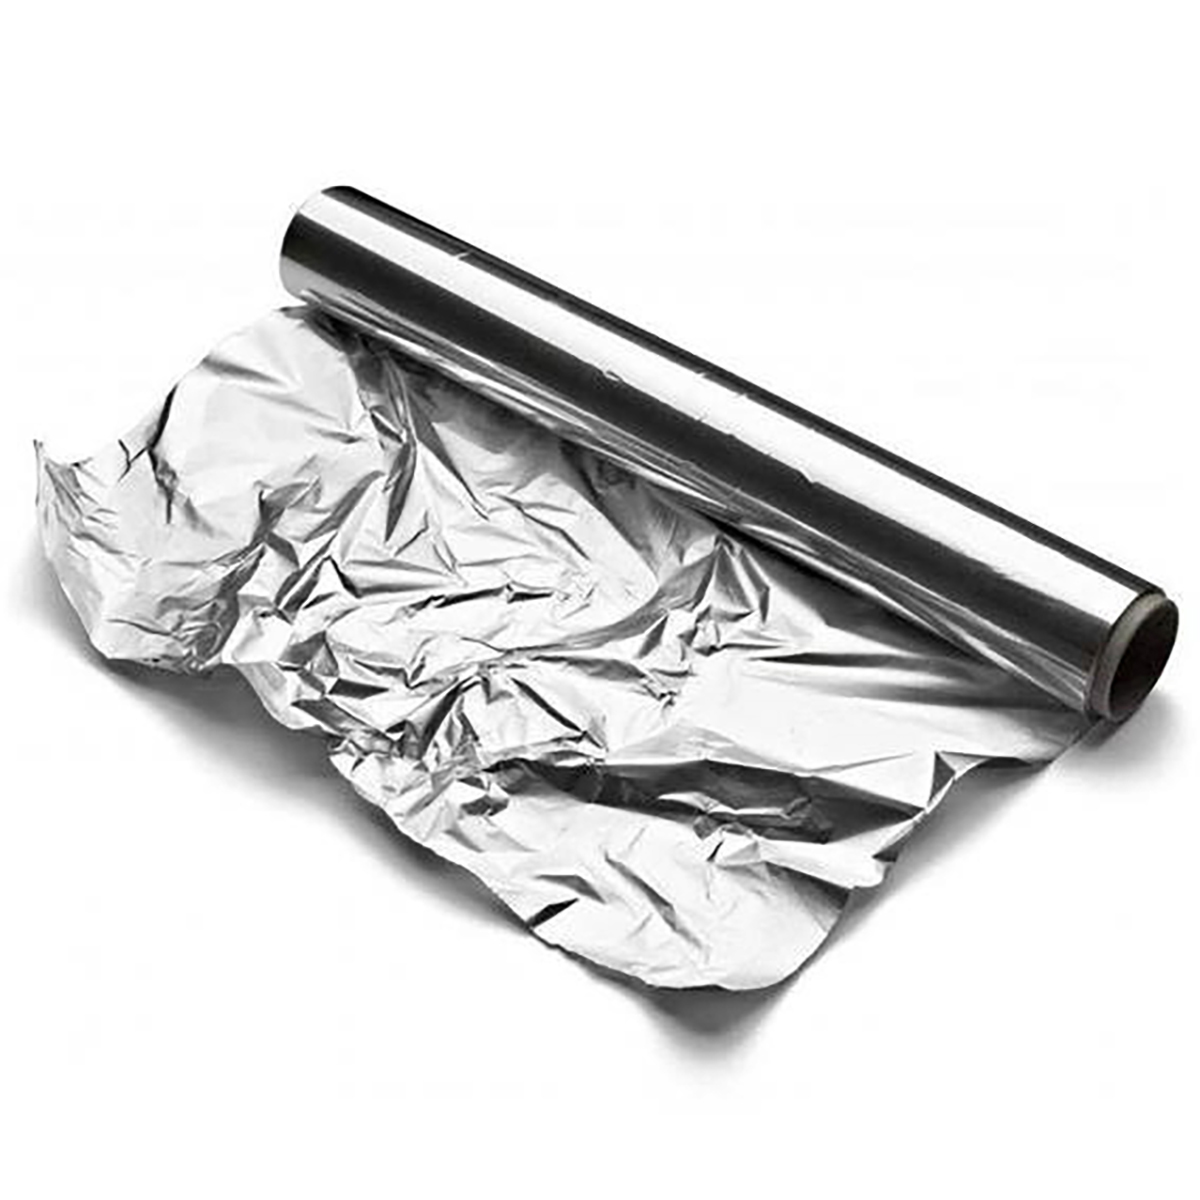 Papier Aluminium Stark : Découvrez la Gamme de Papier Alu Stark